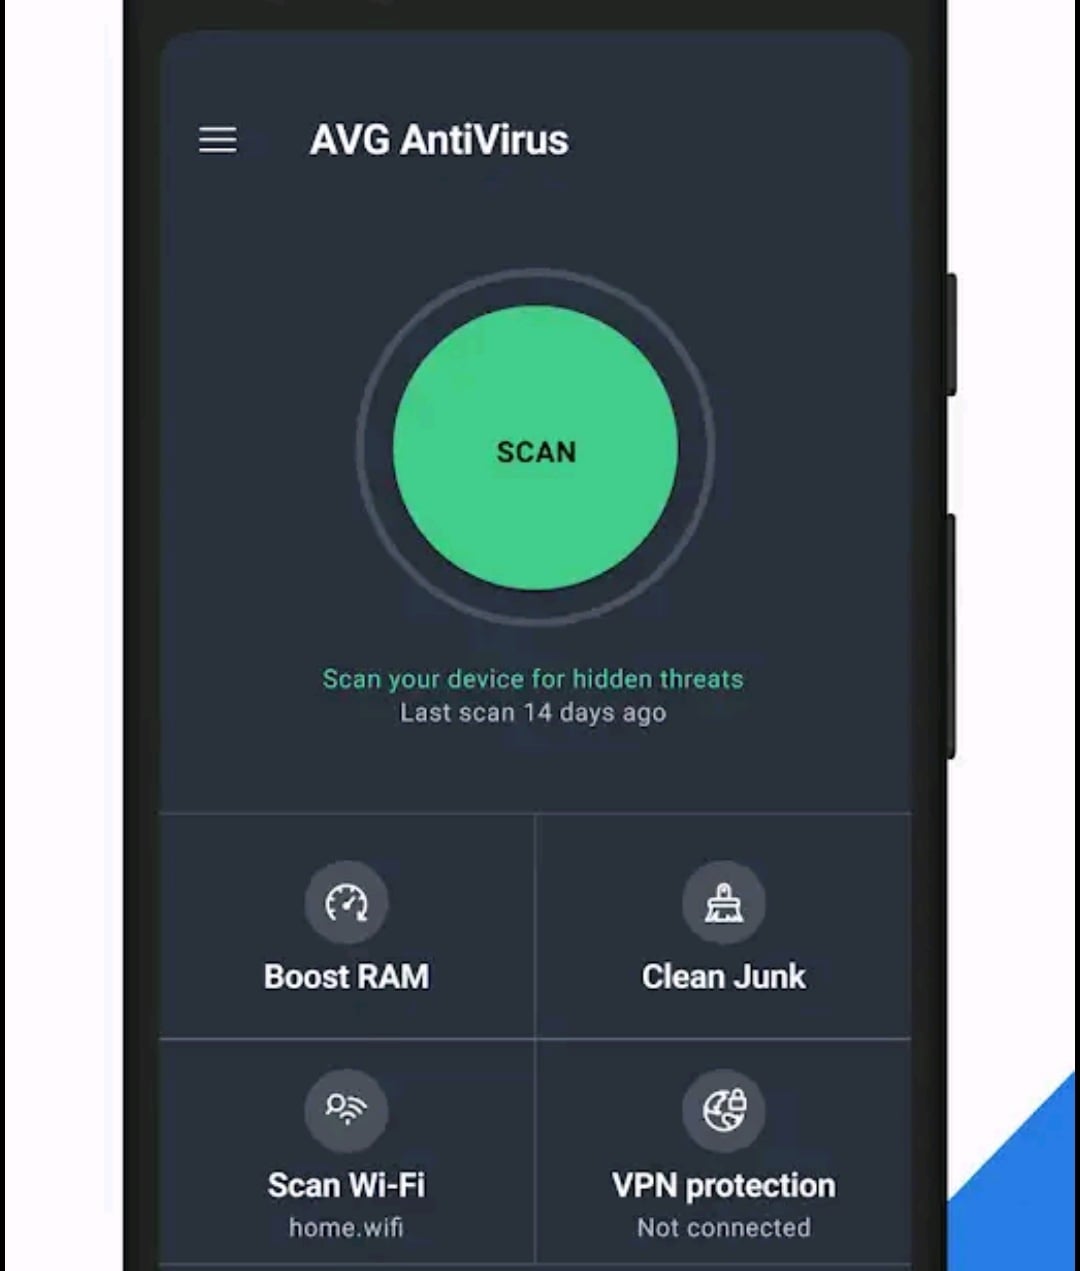 মোবাইল এন্টিভাইরাস সফটওয়্যার | Mobile Antivirus Software